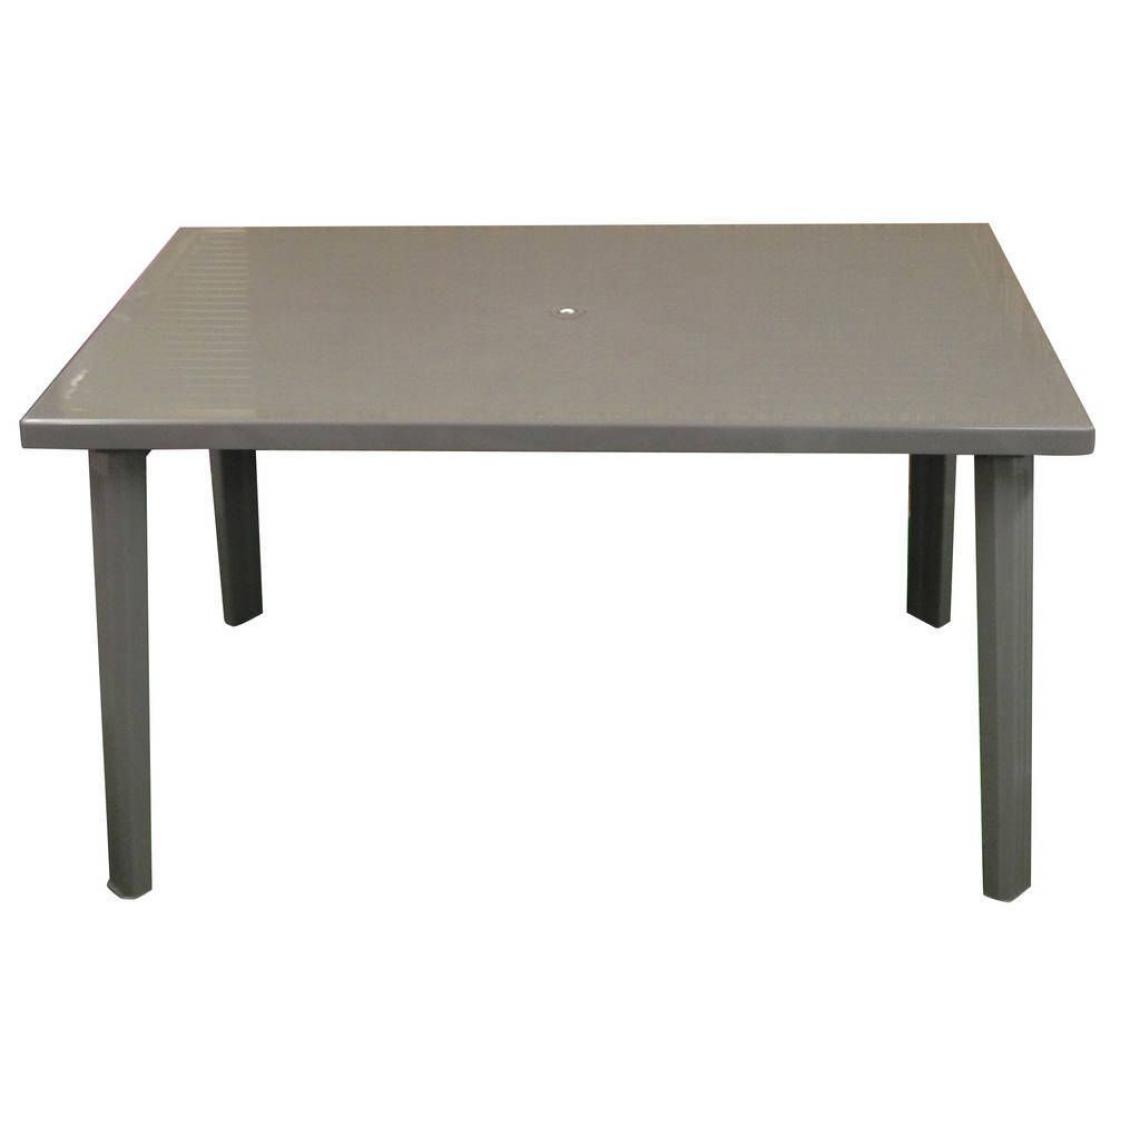 Alter - Table rectangulaire en plastique, couleur taupe, 130x 75 x h72 cm - Tables à manger